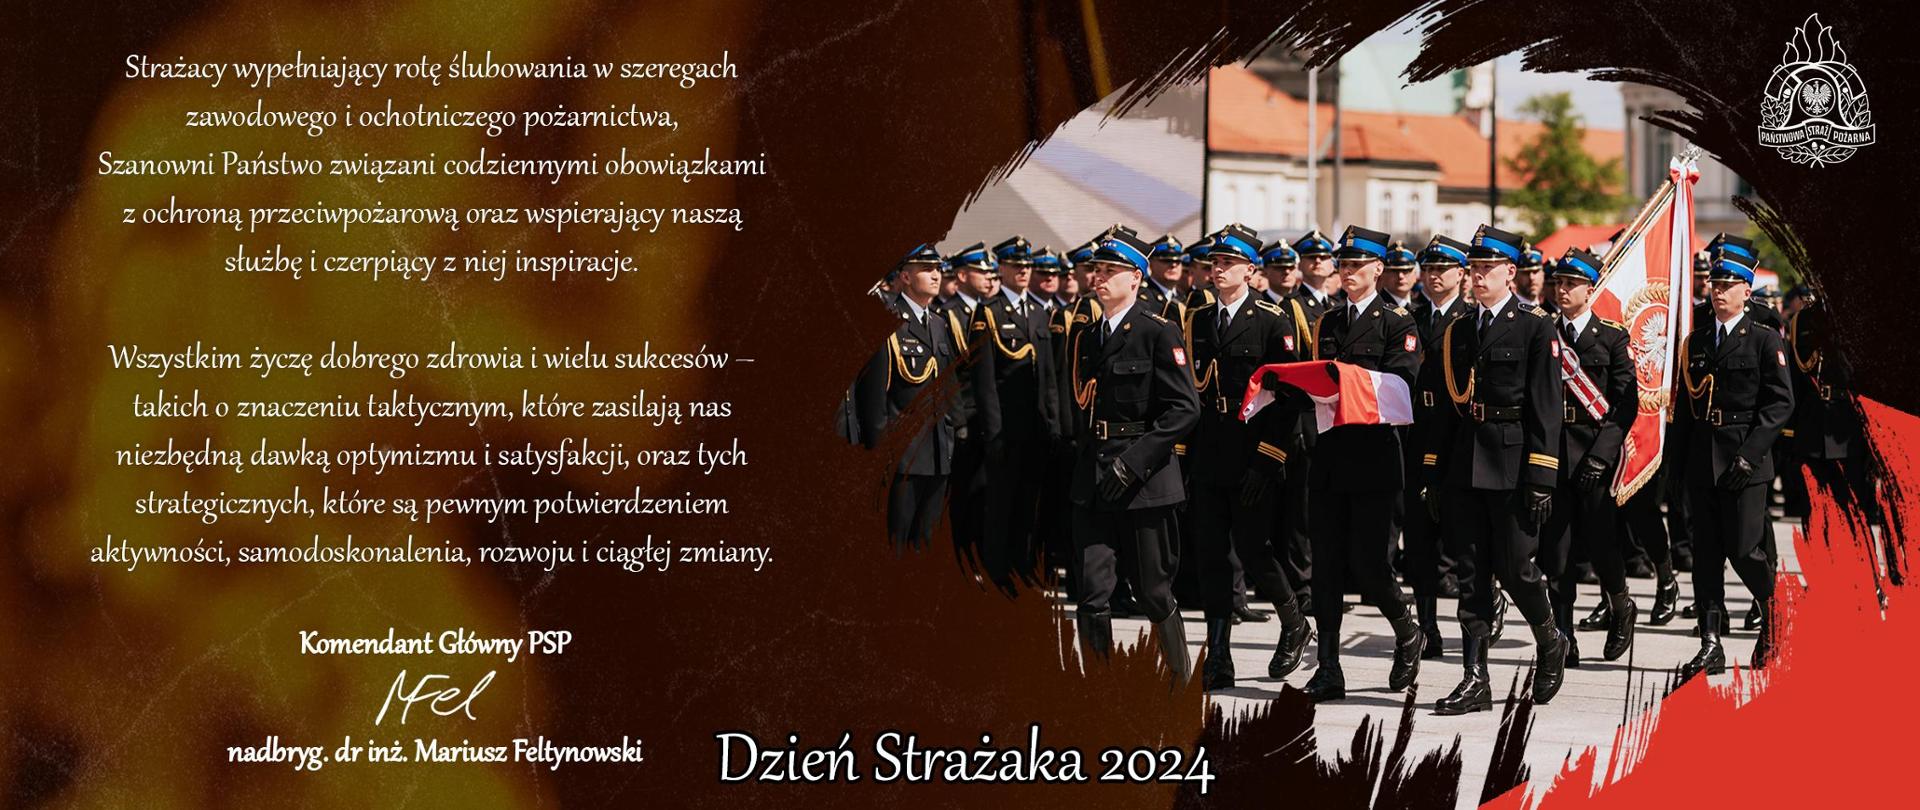 Baner z życzeniami Komendanta Głównego PSP z okazji Dnia Strażaka 2024